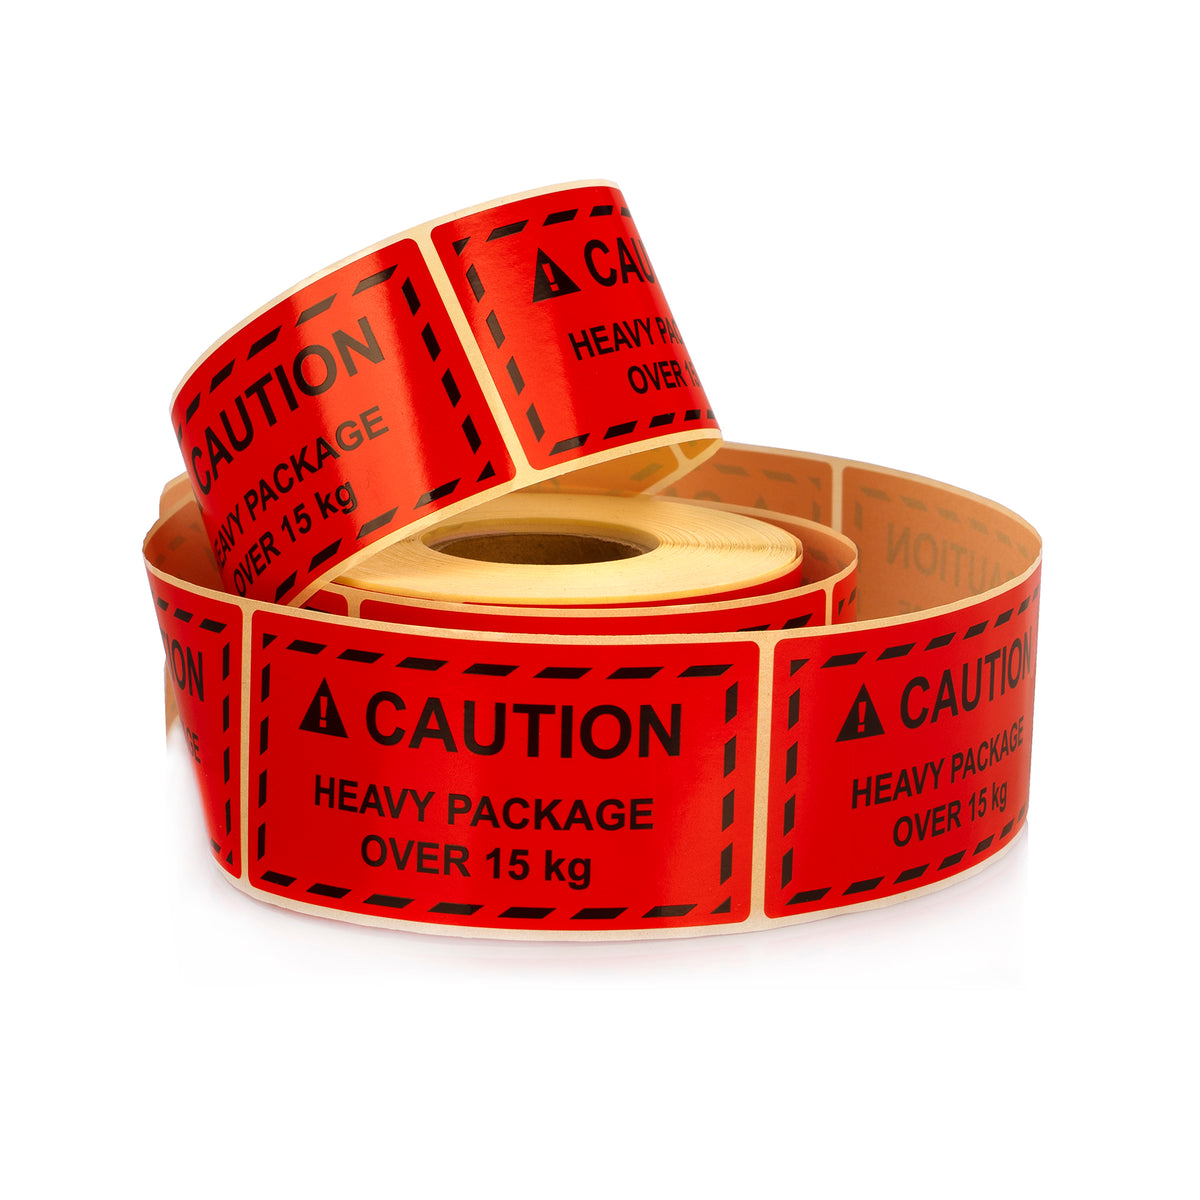 Etykiety ostrzegawcze 100 x 50 mm CAUTIO-CAUTION- Heavy package over 15 kg Etykiety ostrzegawcze dla dostawców Amazon i FBA Fulfillment 500 szt.